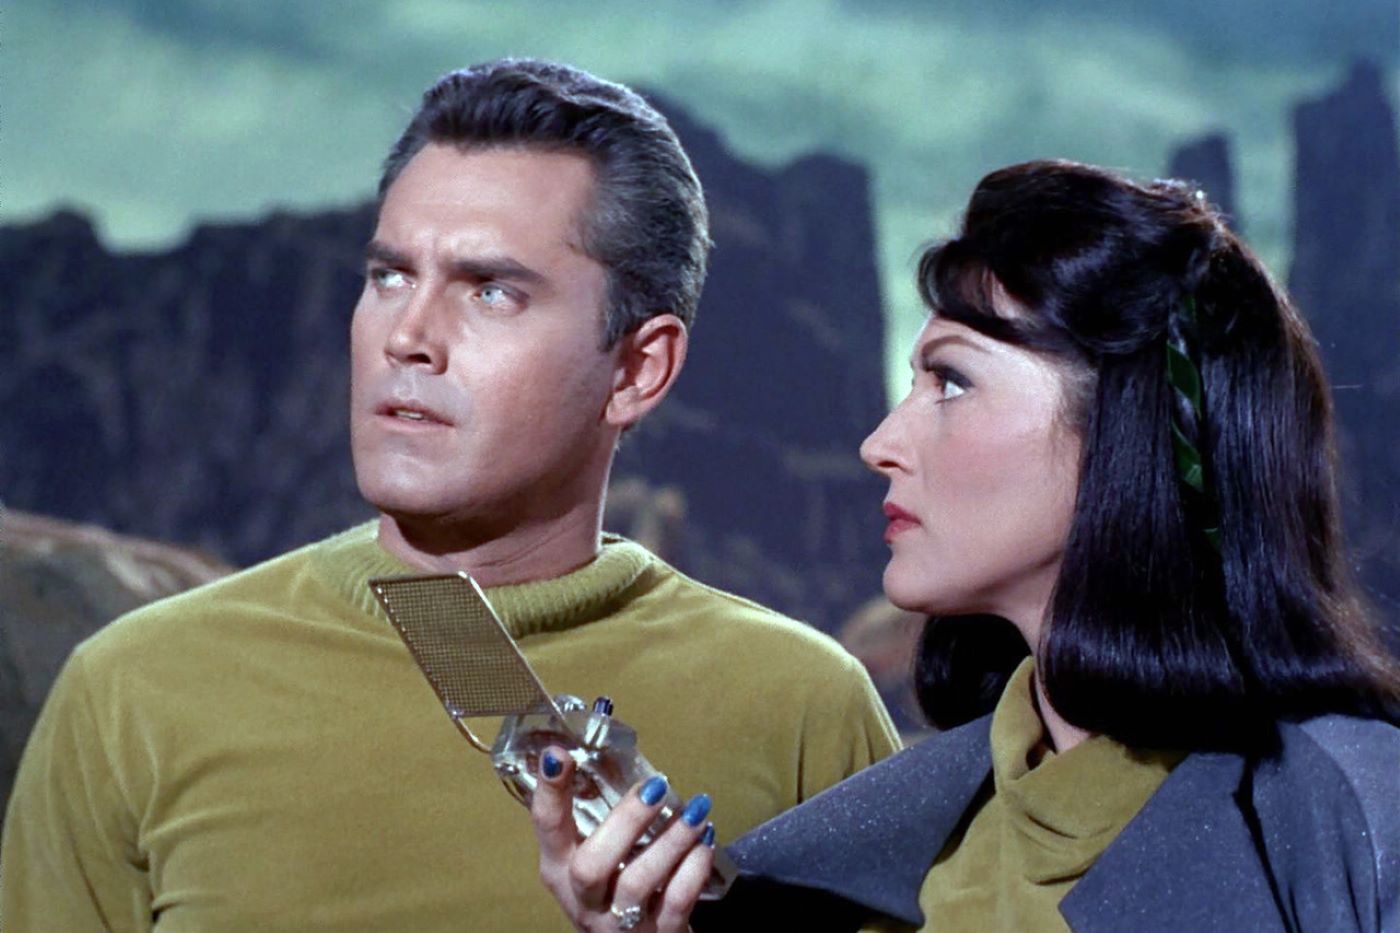 De mislukte piloot van Star Trek was bijna de eerste bioscoopfilm